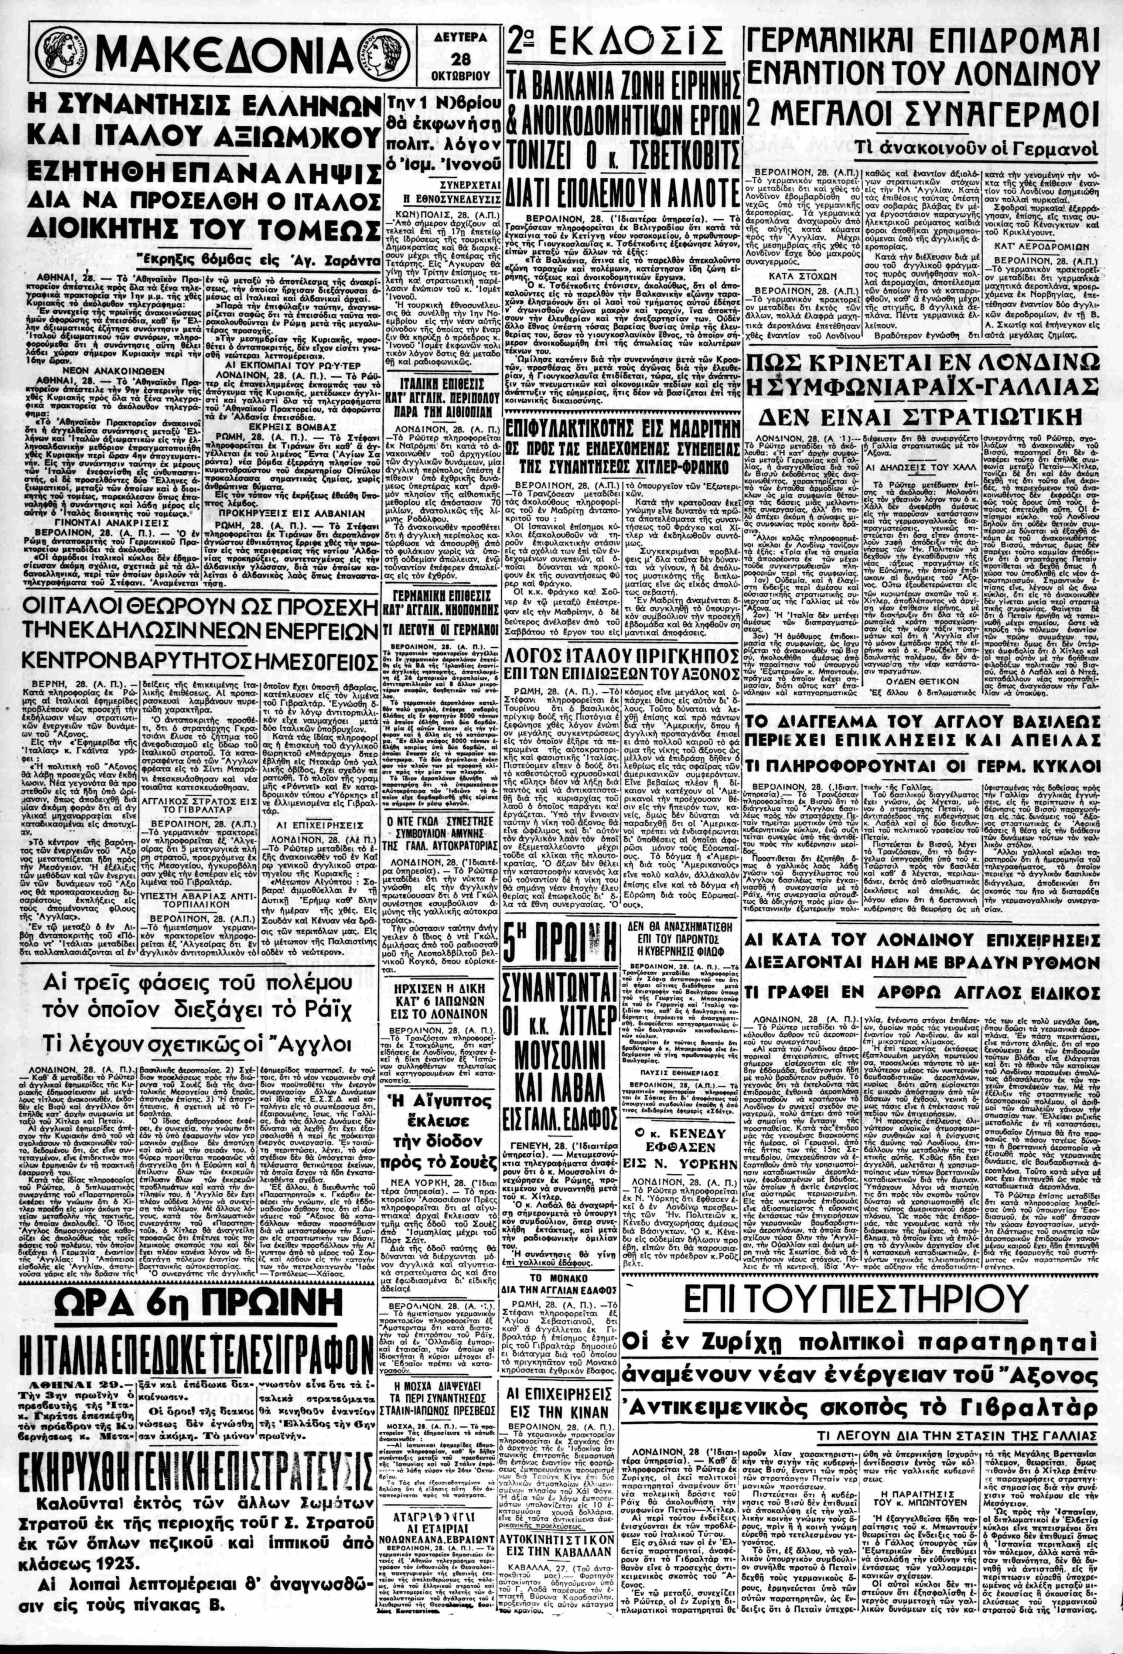 Η εφημερίδα της Θεσσαλονίκης στην δεύτερη έκδοση θα δώσει την είδηση περί τελεσιγράφου και γενικής επιστράτευσης. Η ανακοίνωση κάτω αριστερά